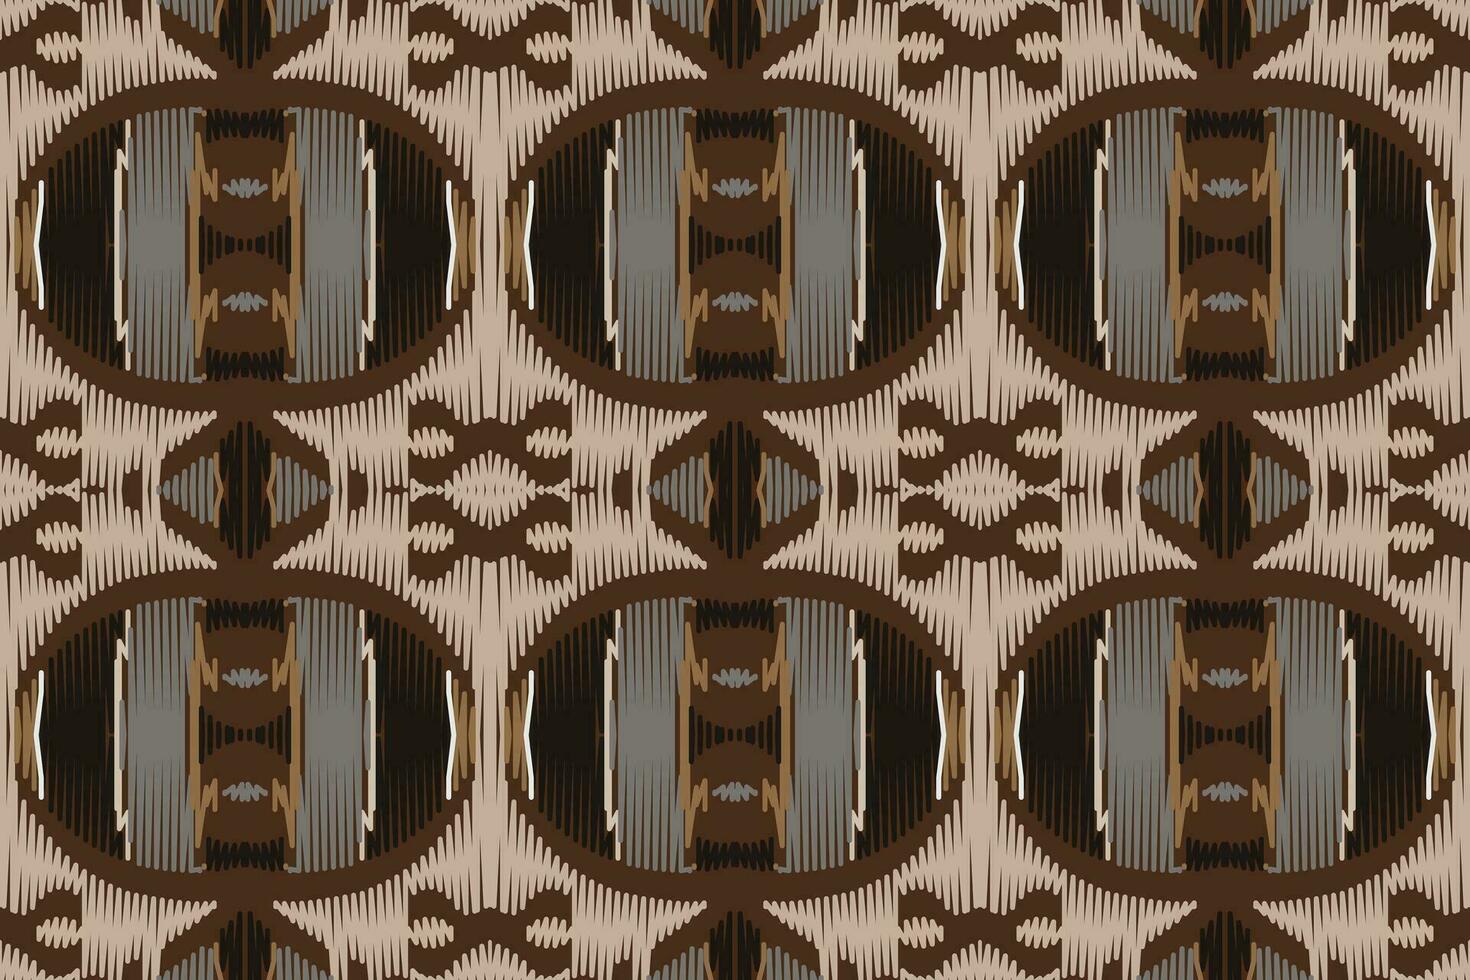 motiv ikat blommig paisley broderi bakgrund. ikat sparre geometrisk etnisk orientalisk mönster traditionell.aztec stil abstrakt vektor illustration.design textur, tyg, kläder, inslagning, sarong.